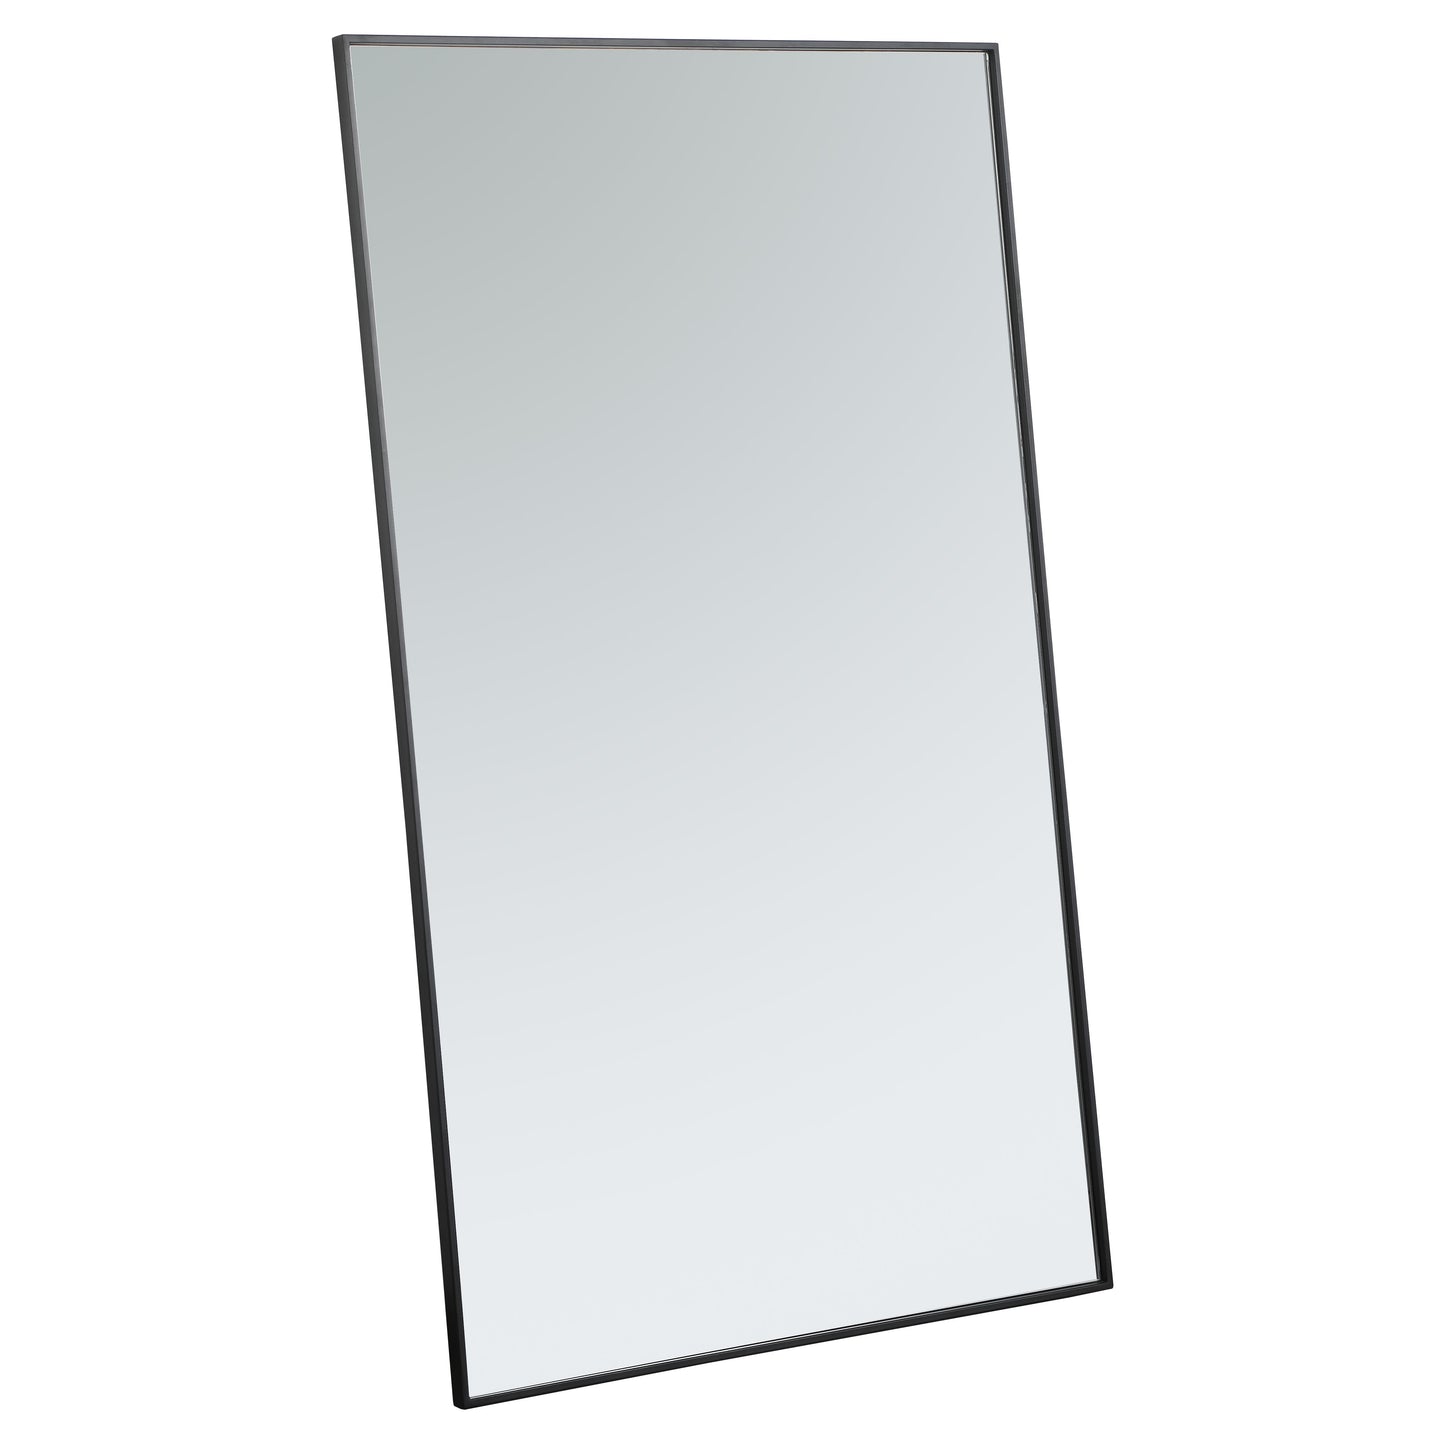 MR43660BK Monet 36" x 60" Metal Framed Rectangular Mirror in Black